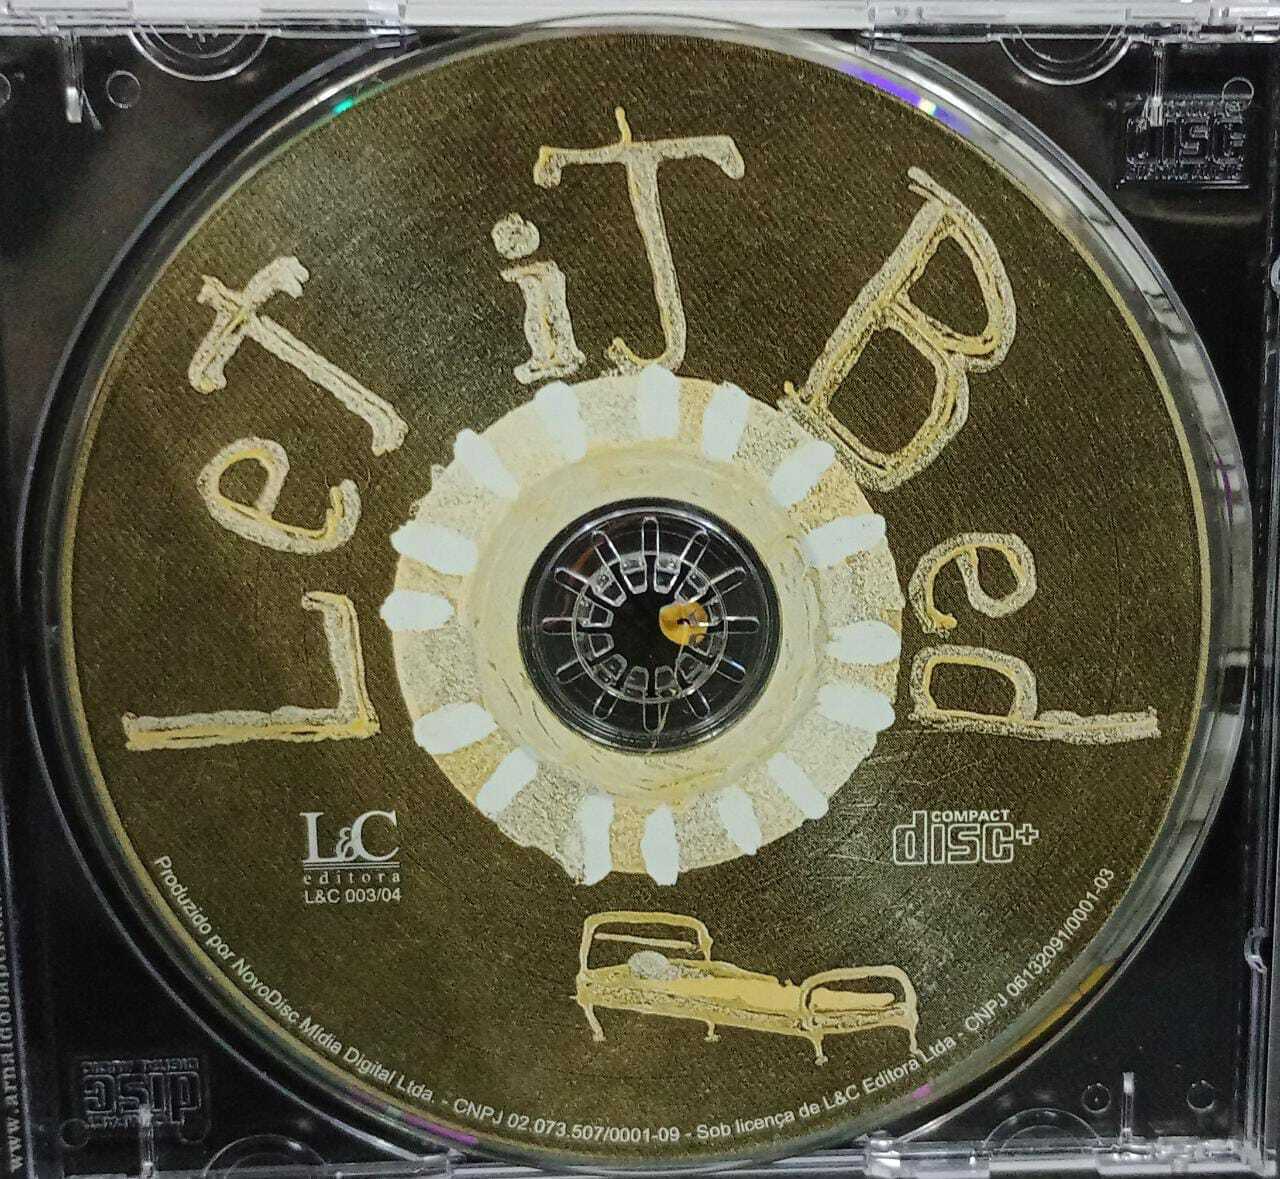 CD - Arnaldo Baptista - Let it Bed